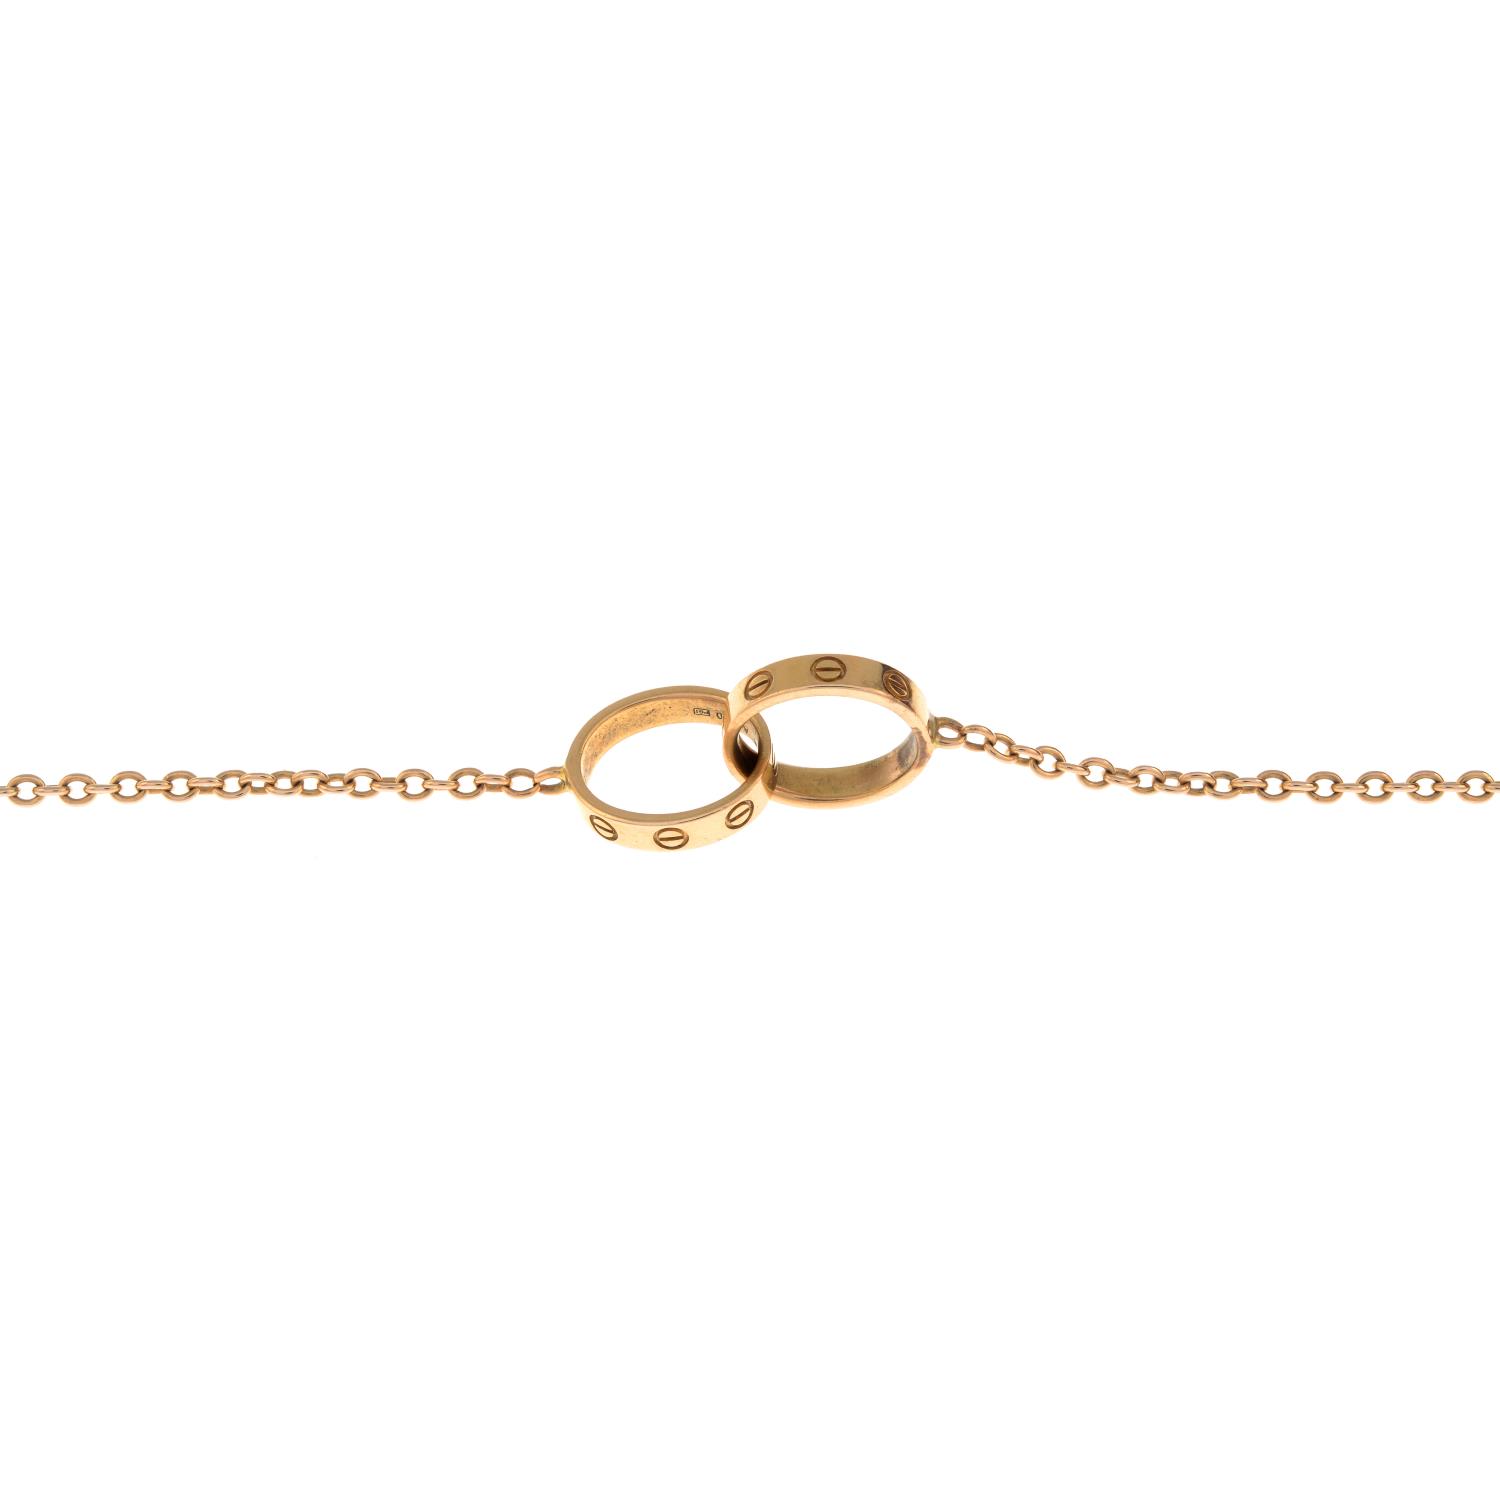 CARTIER - an 18ct gold 'Love' bracelet.